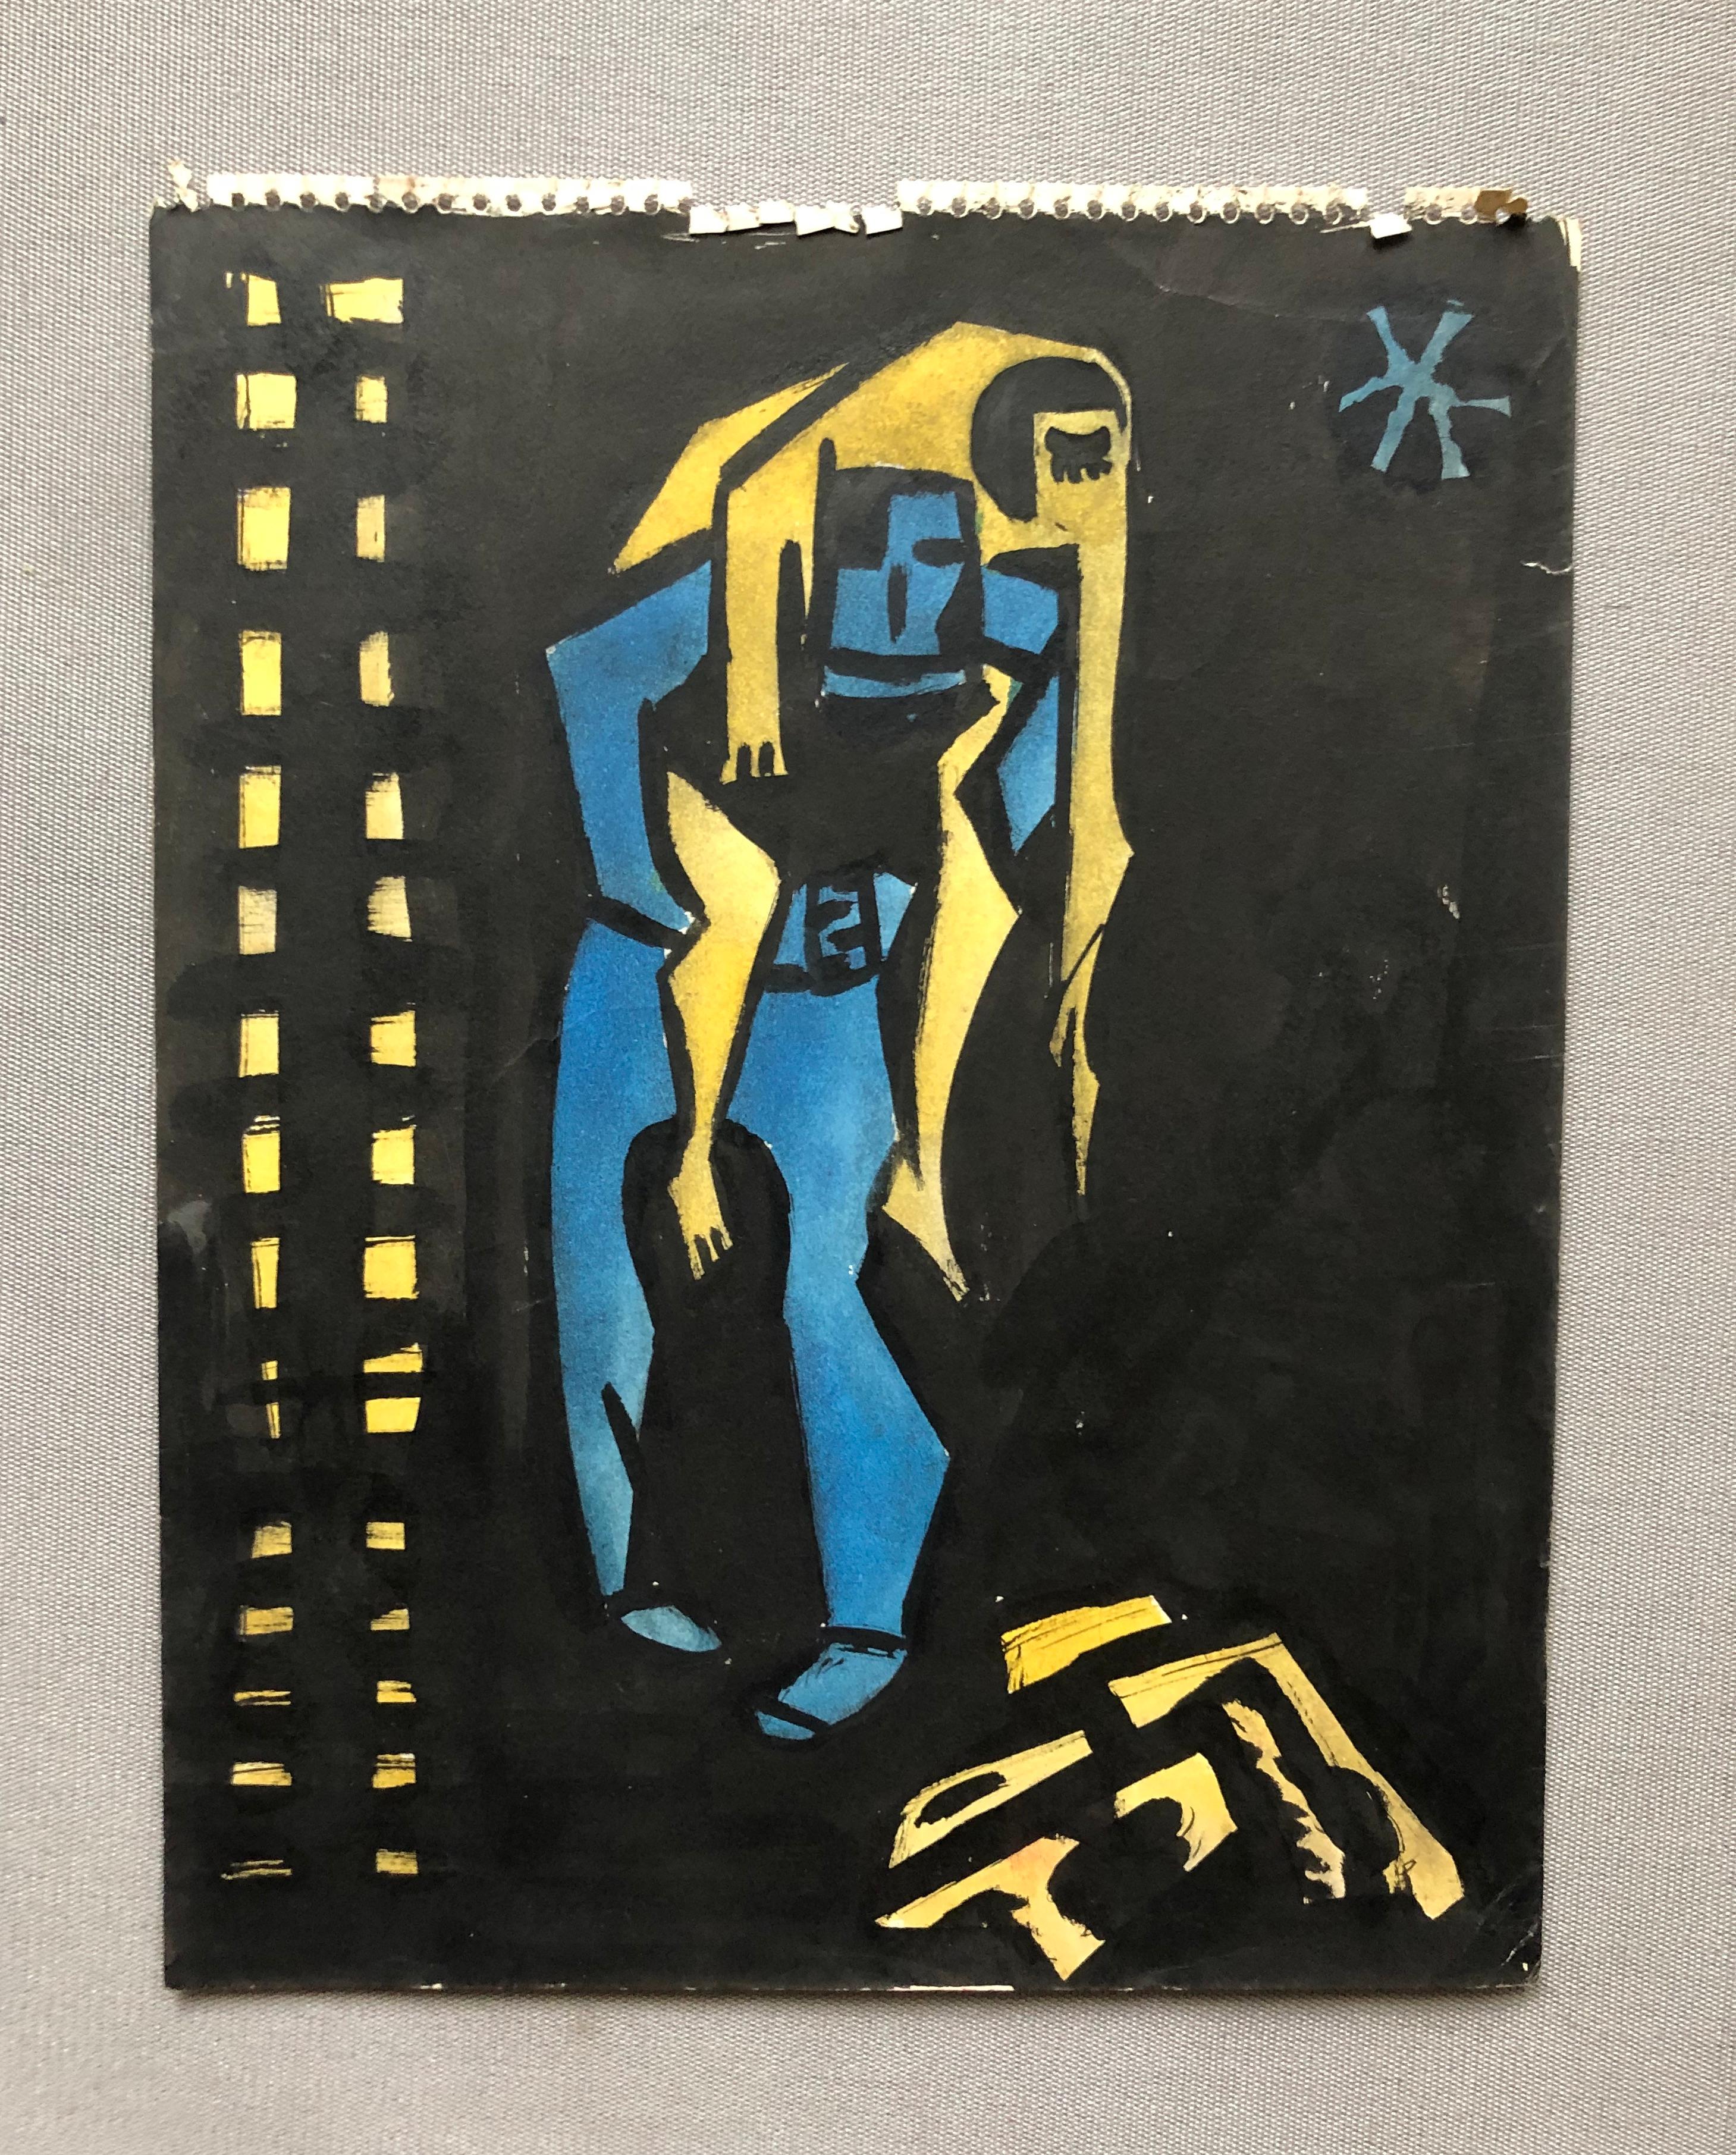 Gerard CHARRIERE (1935)
Suite von fünf Skizzen.
Tusche und Aquarell auf Papier.
Eine einzige signierte Skizze.
Foldes, Flecken, kleine Risse je nach Blatt.
24 x 20 und 27 x 21 cm